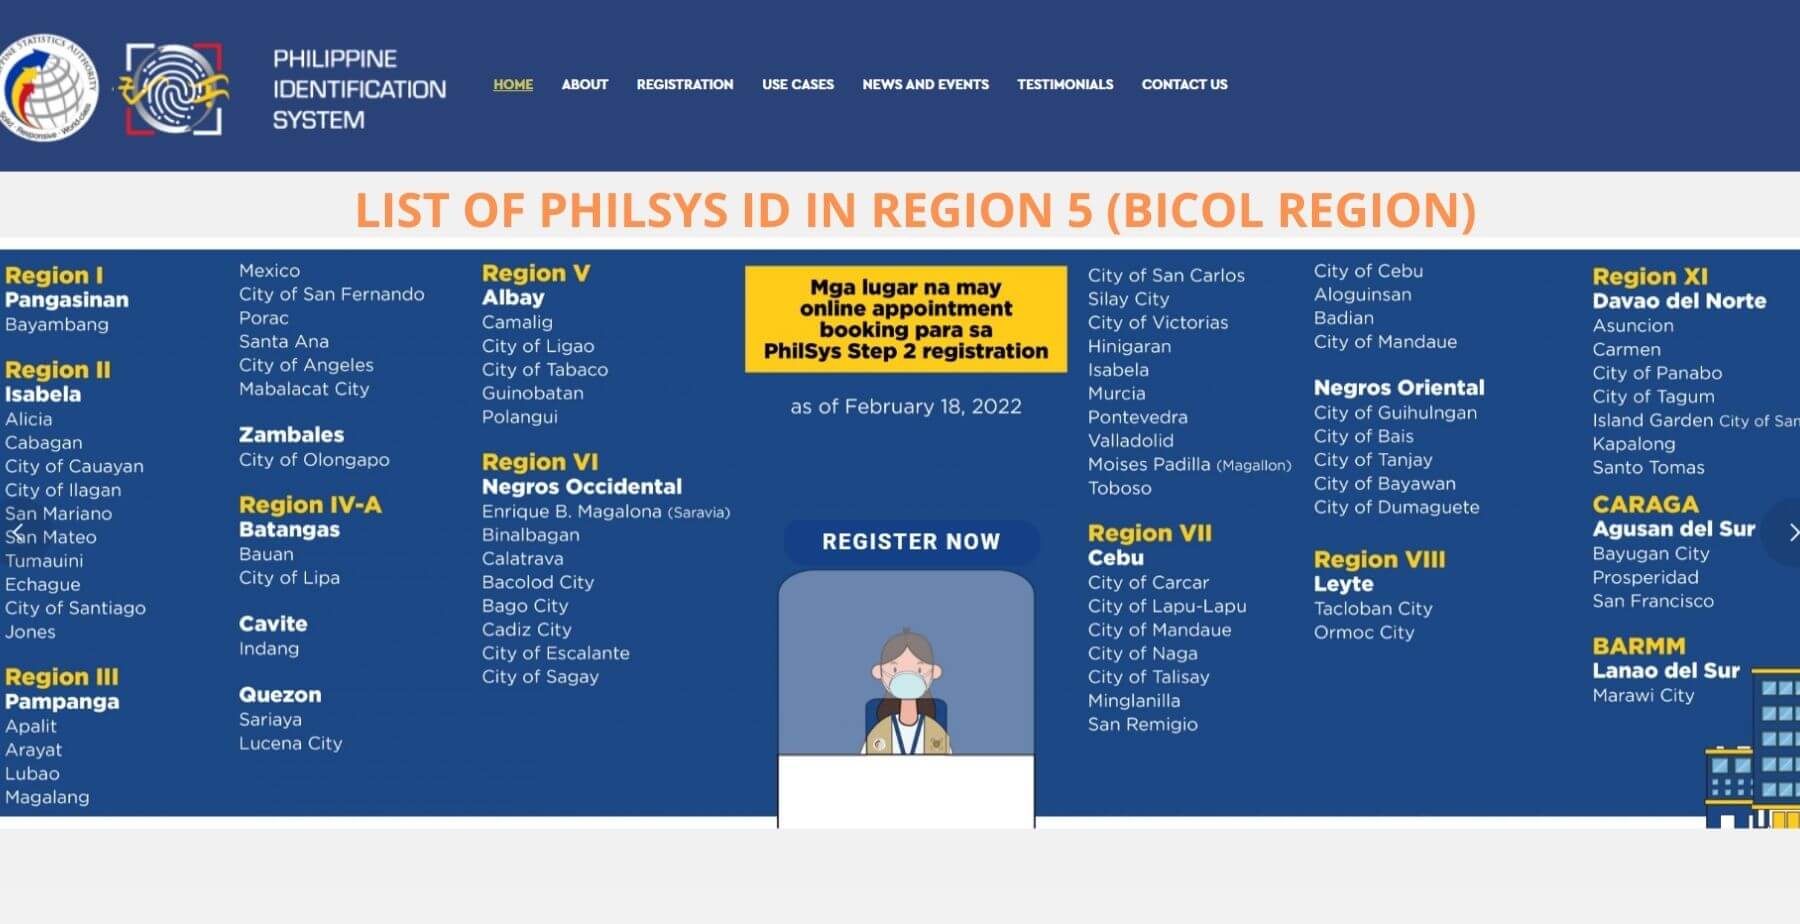 LIST OF PHILSYS ID IN REGION 5 (BICOL REGION)